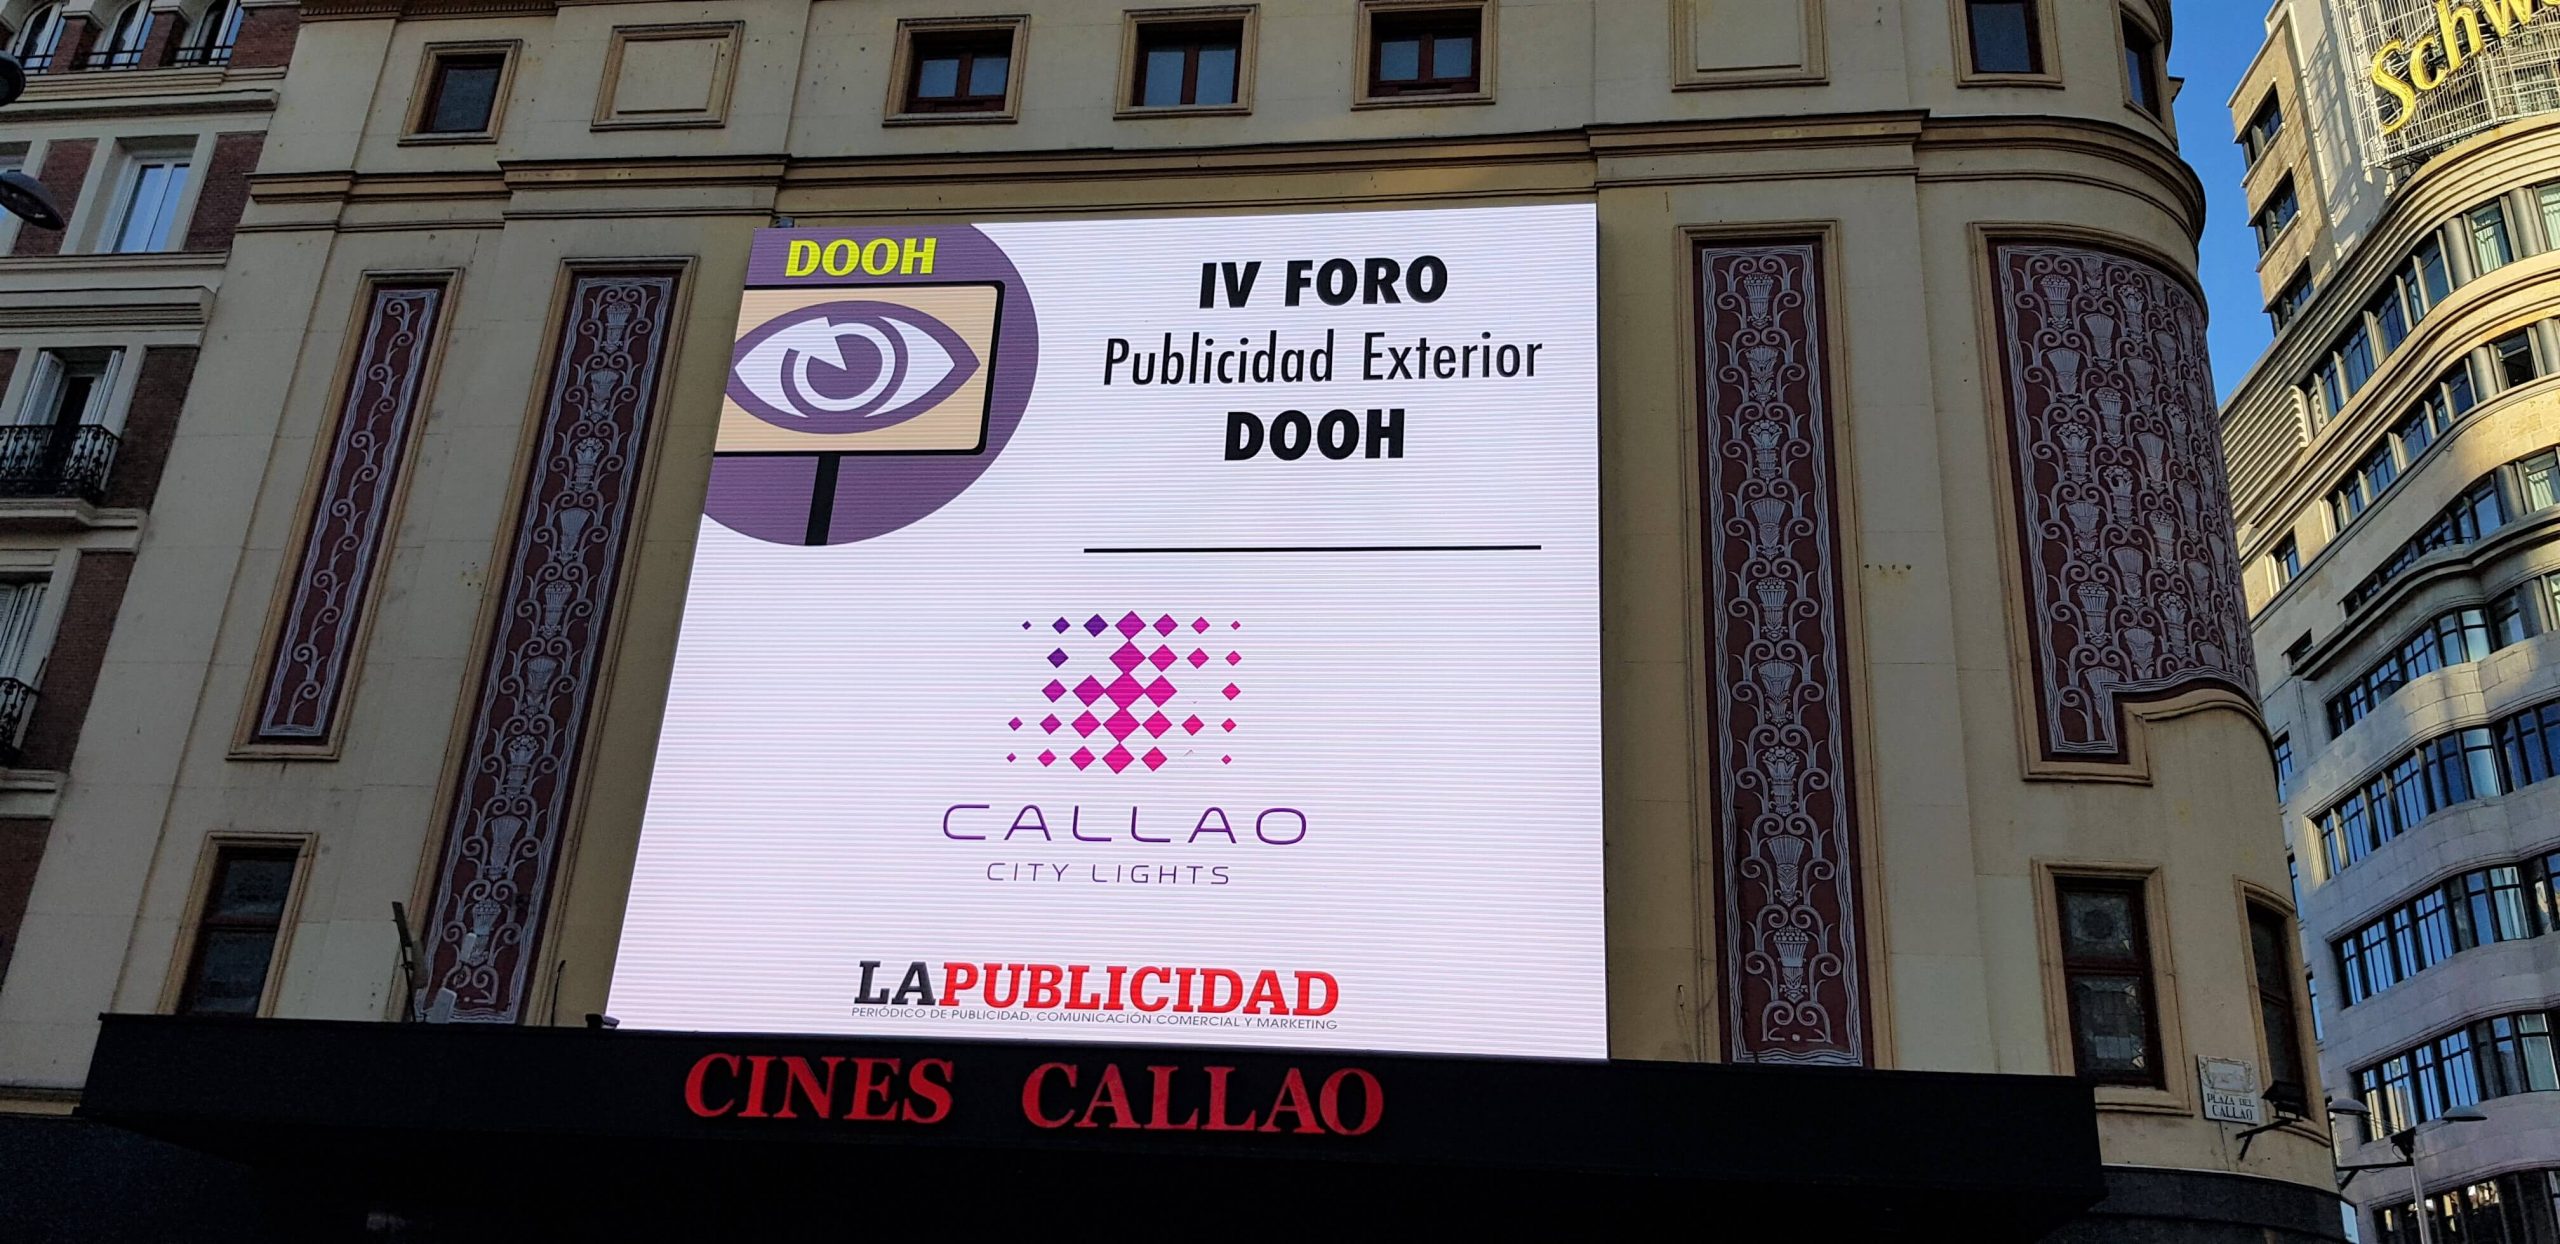 LA PUBLICIDAD CELEBRATES IN CALLAO THE IV FORUM OF OUTDOOR ADVERTISING DOOH